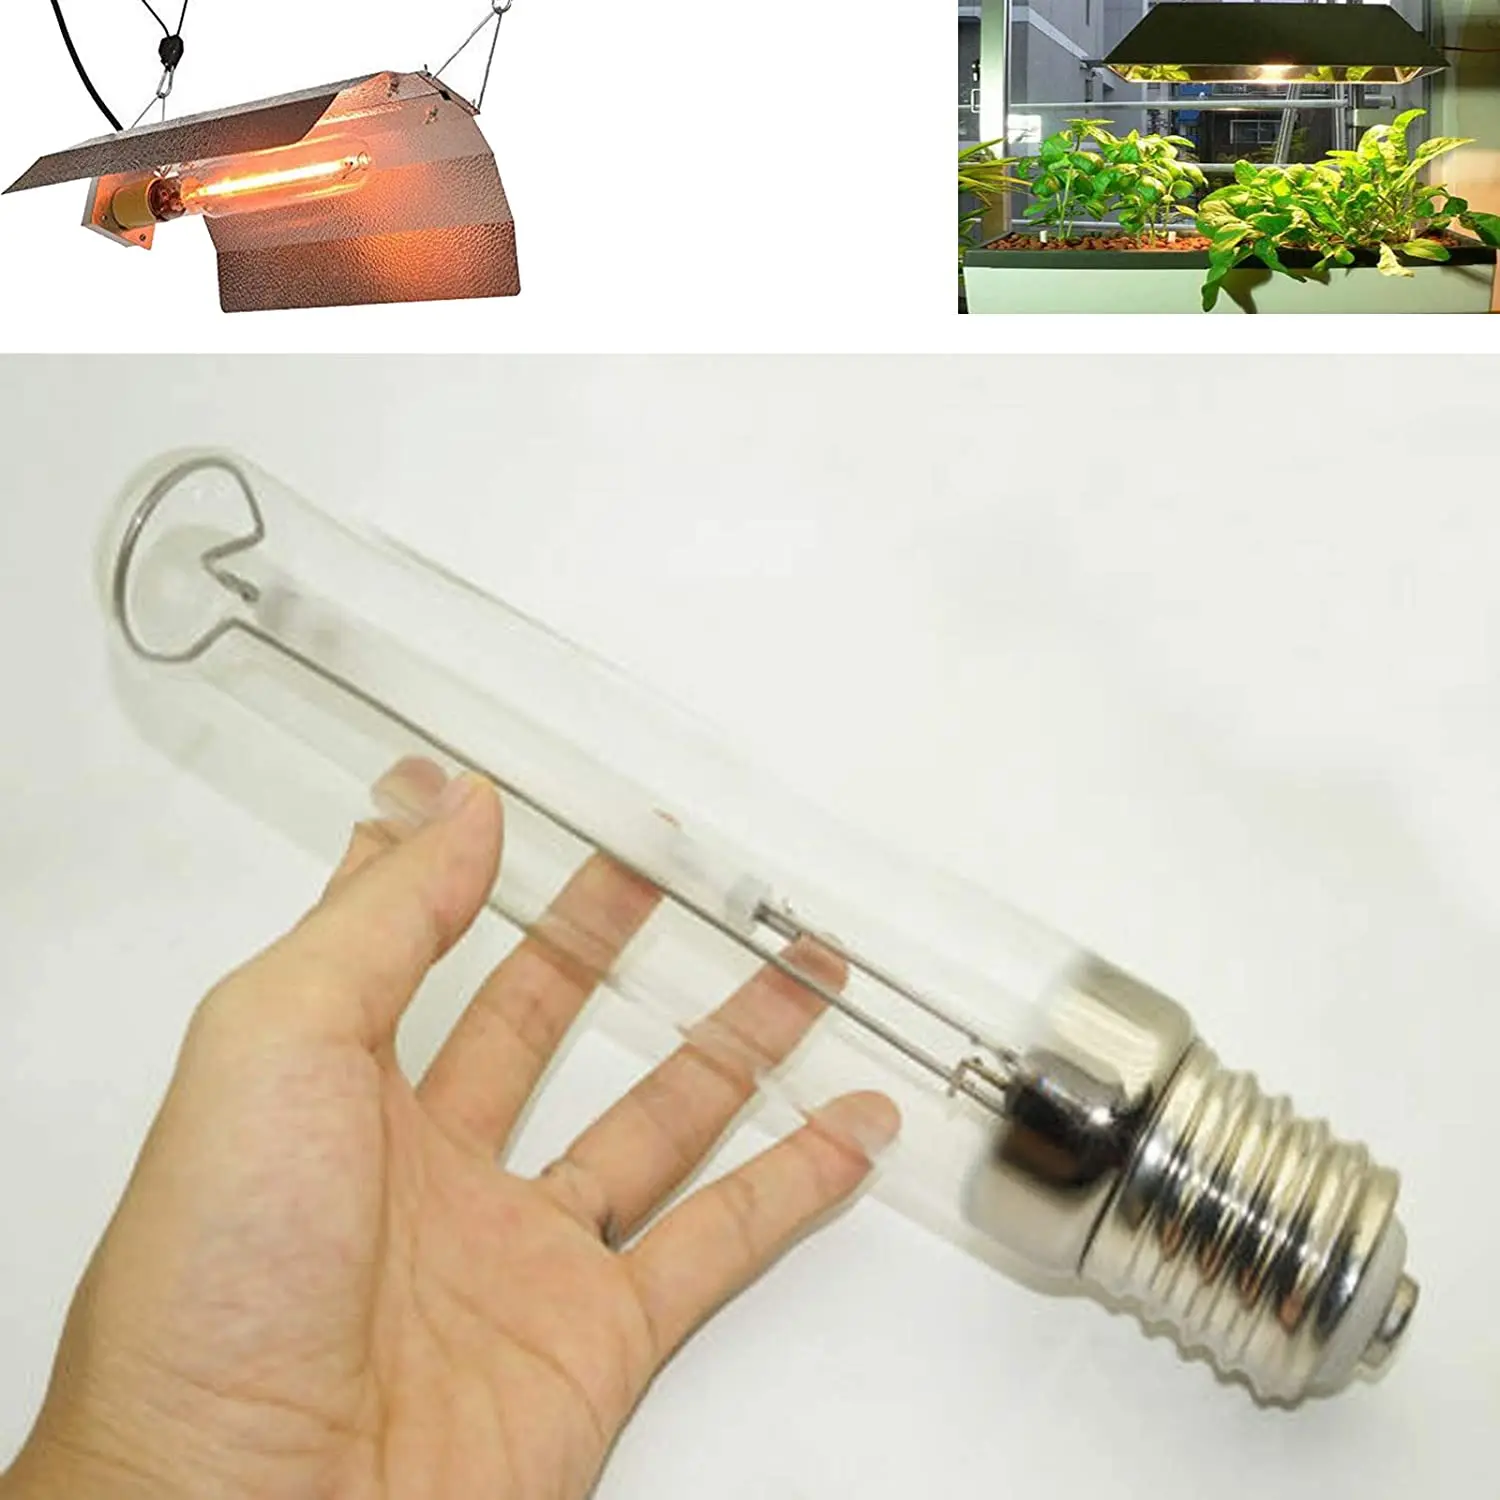 CHD Keramik-Metalldampflampe Agro Lampe für Pflanzenzucht 400 Watt E40 Sockel 